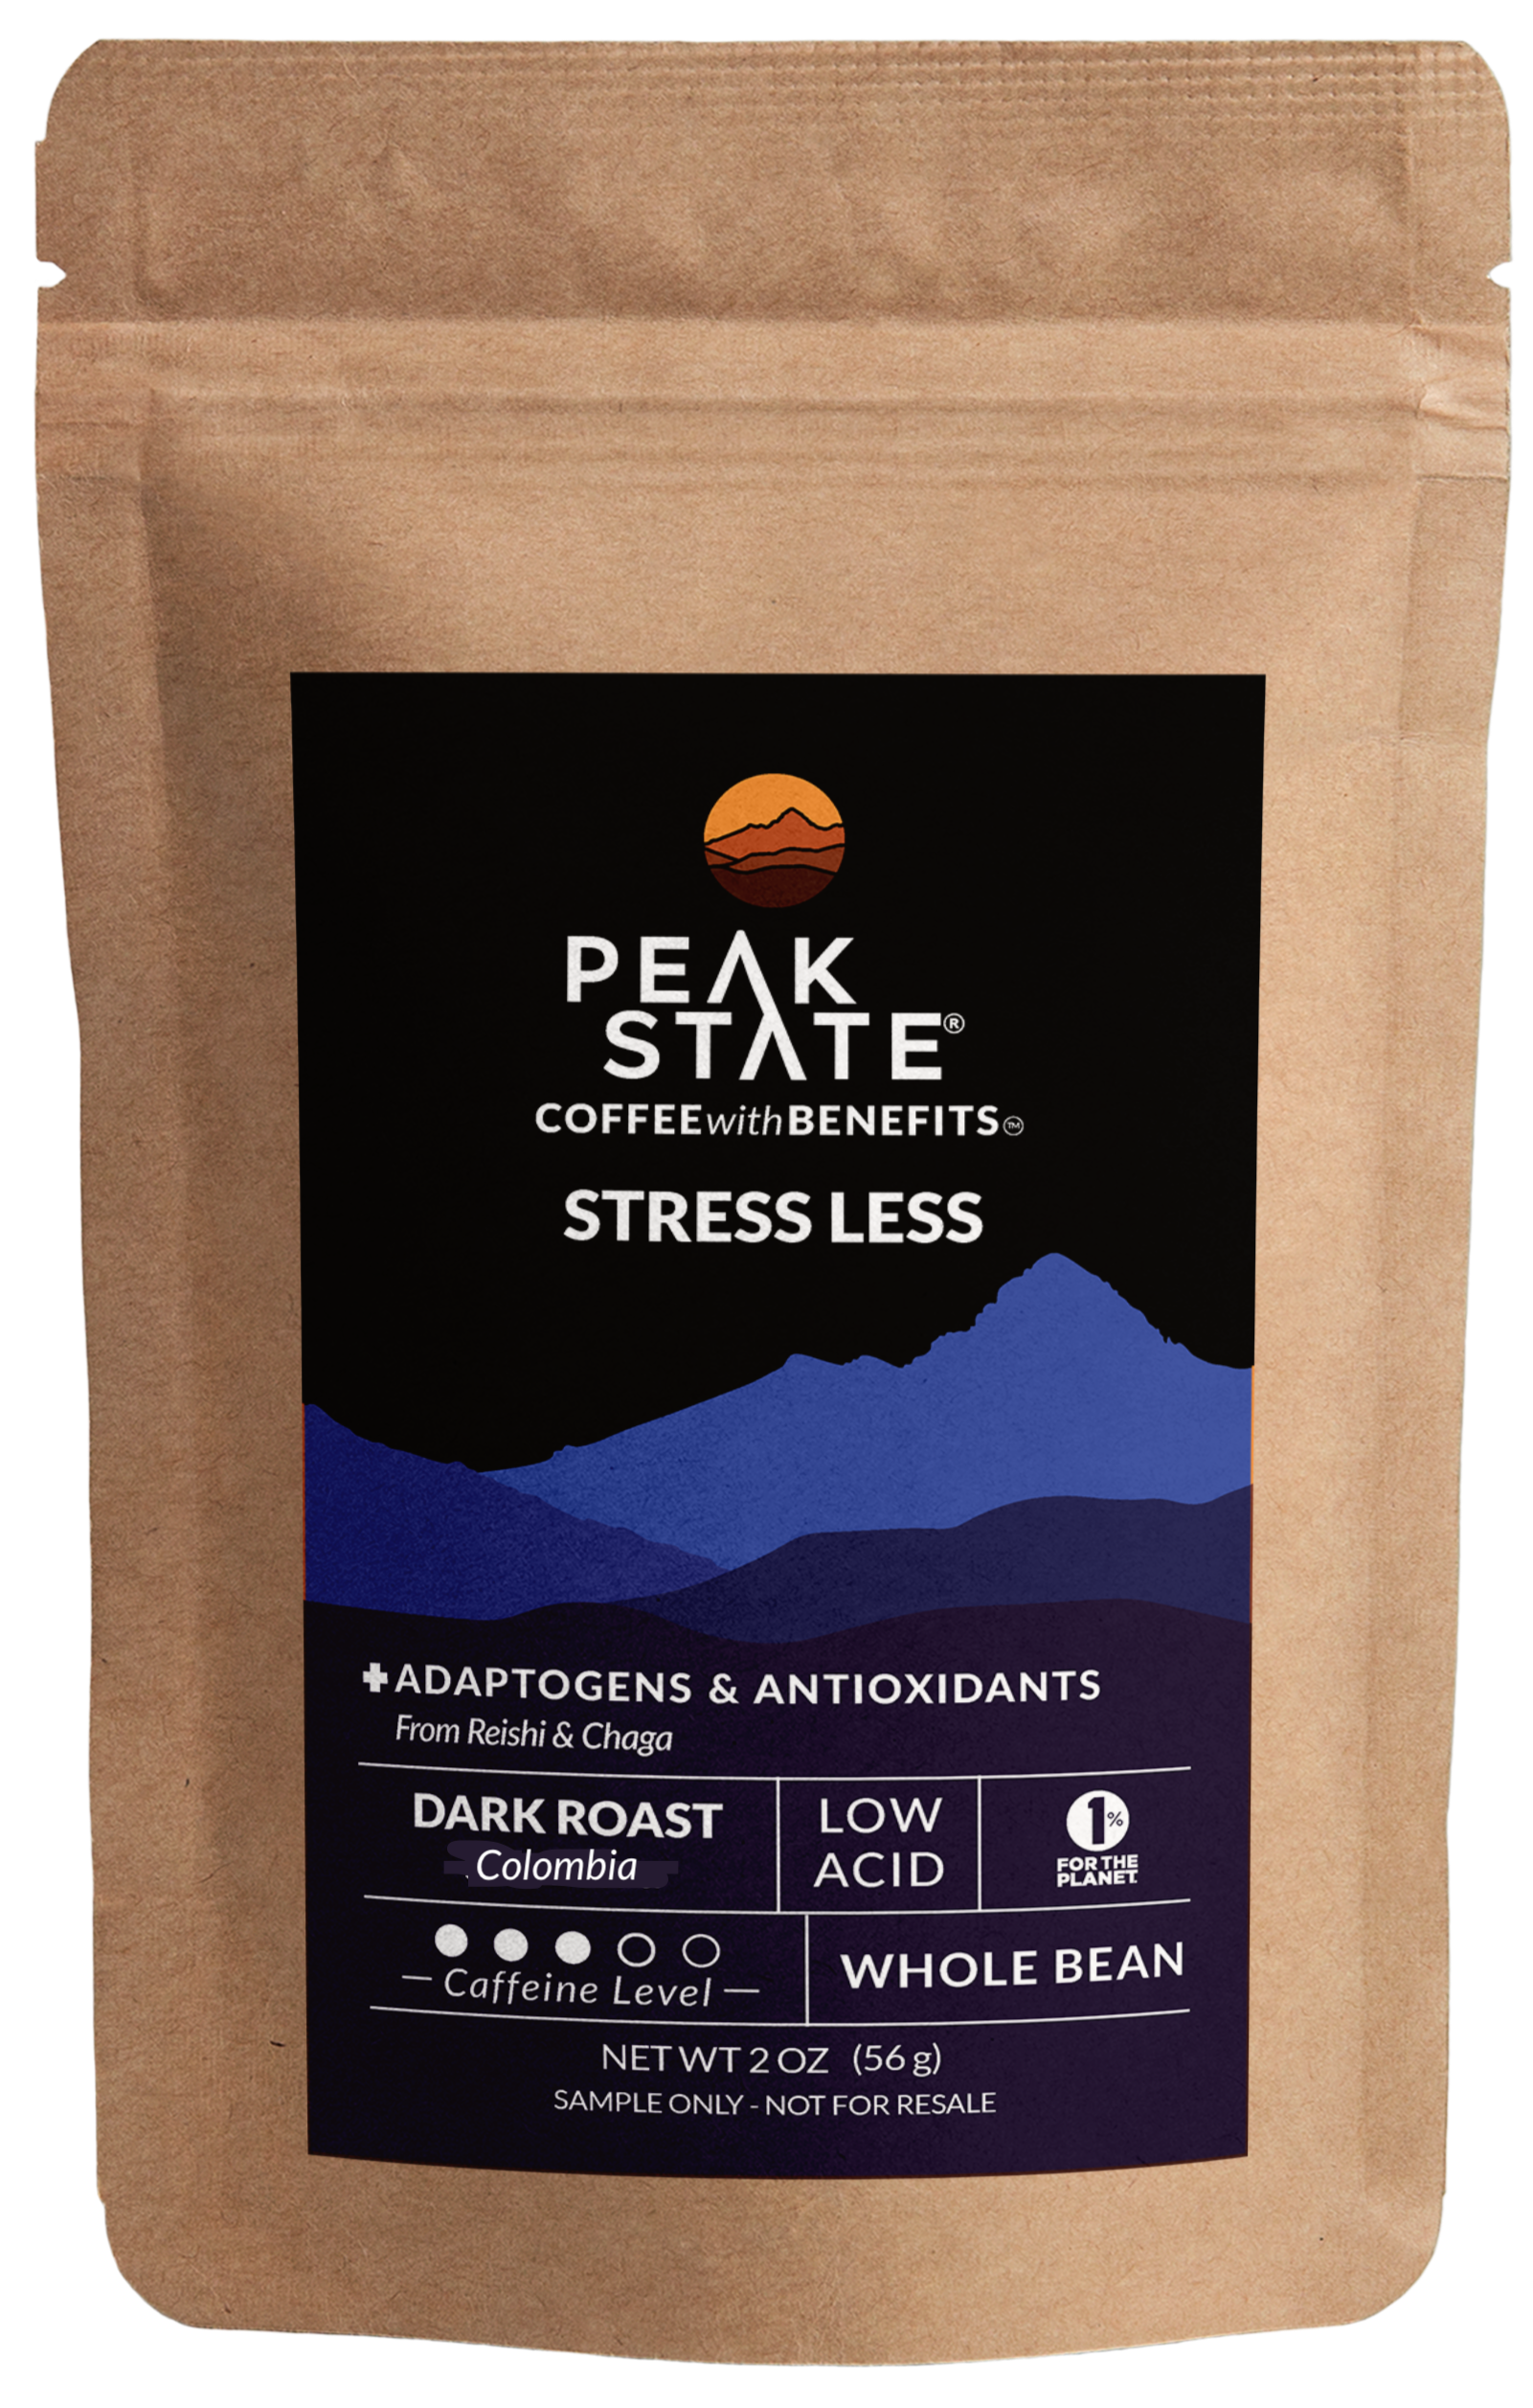 2oz sample bag of Peak State's dark roast mushroom coffee.